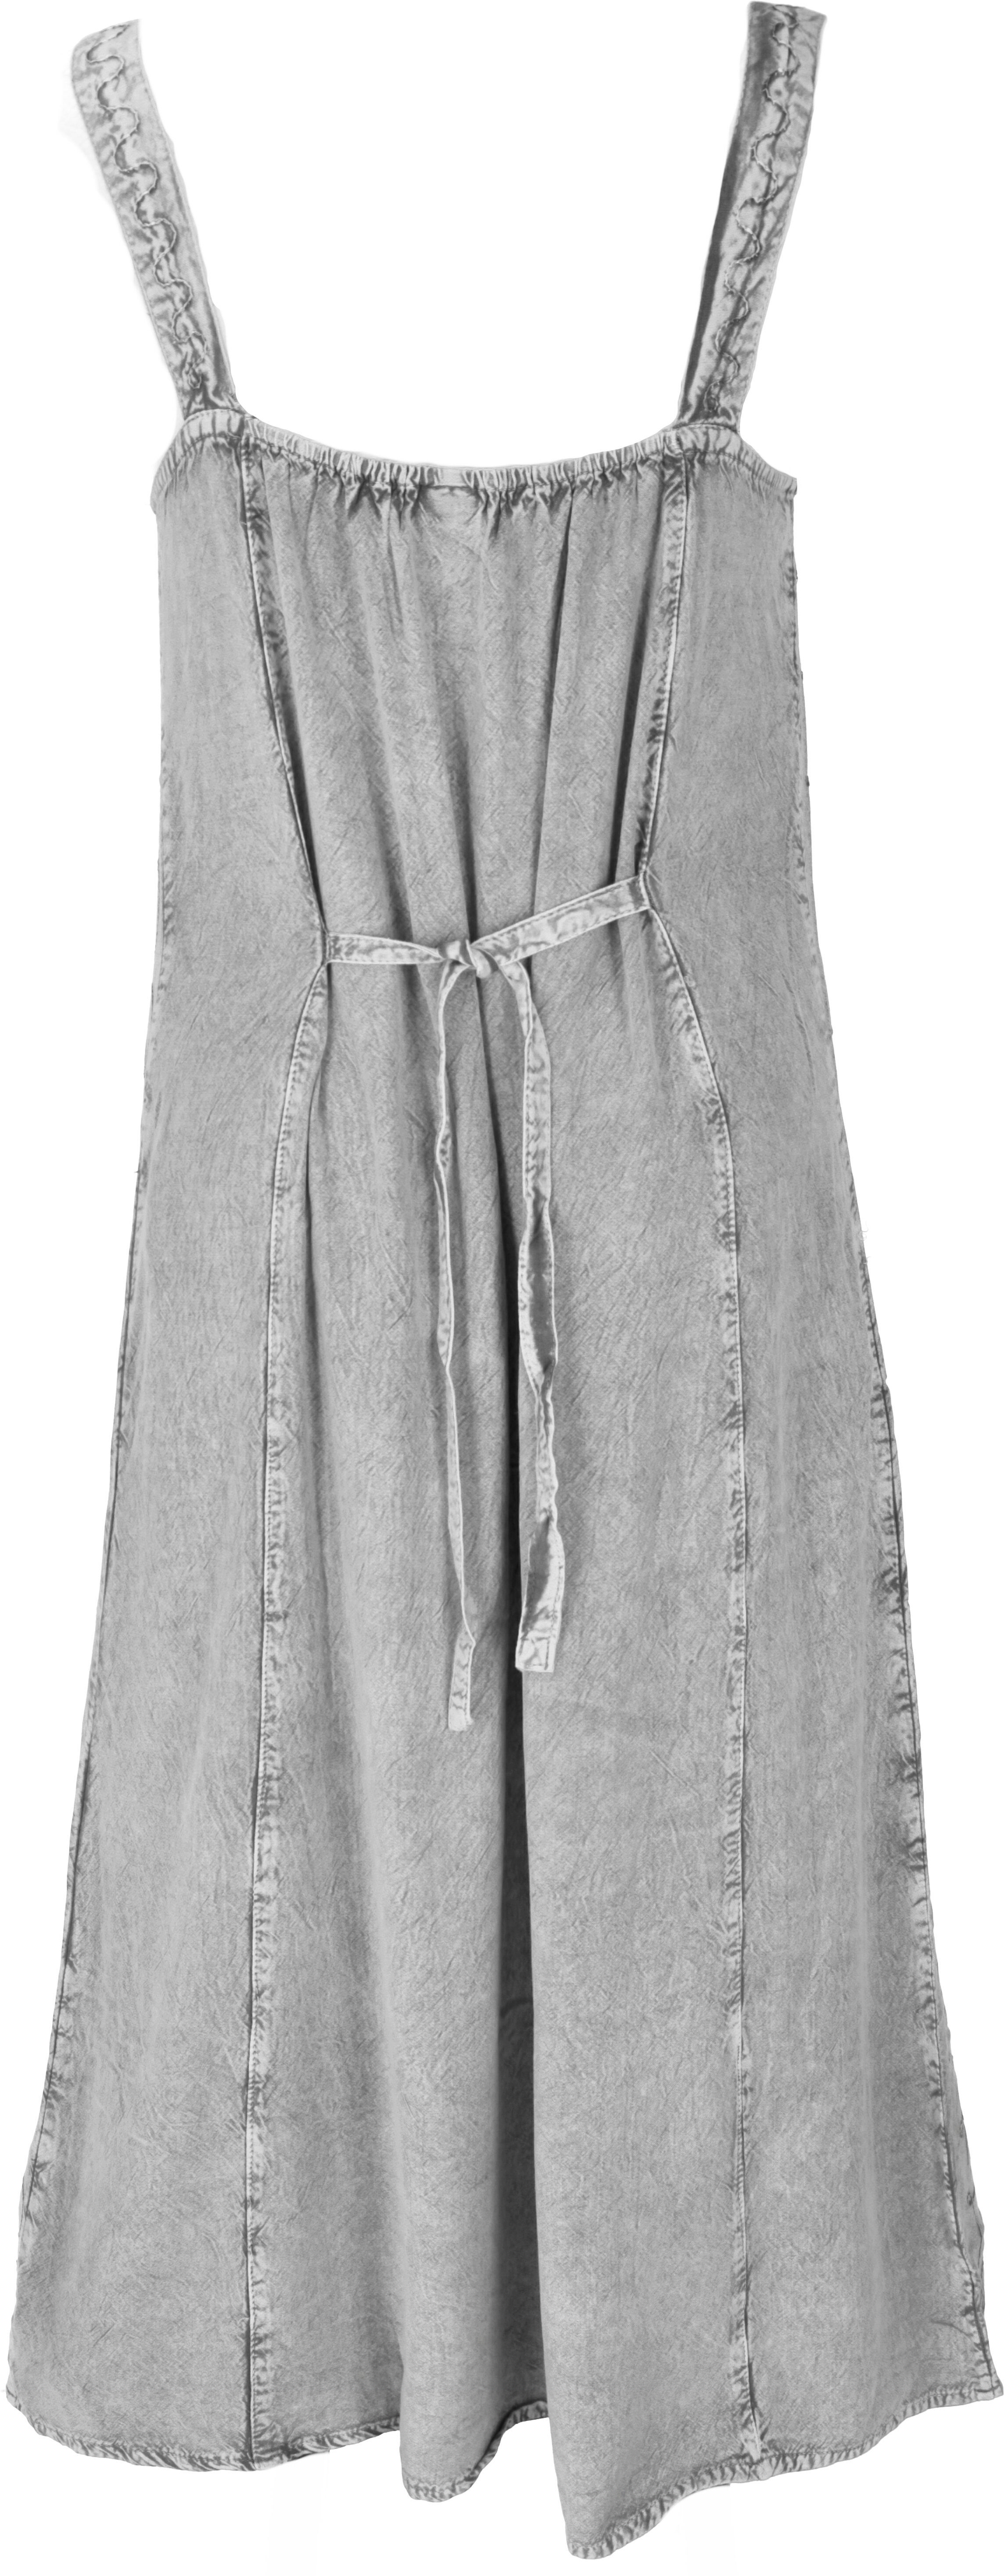 Guru-Shop Boho 20 Besticktes Sommerkleid, grau/Design Bekleidung Midikleid alternative indisches Hippie..